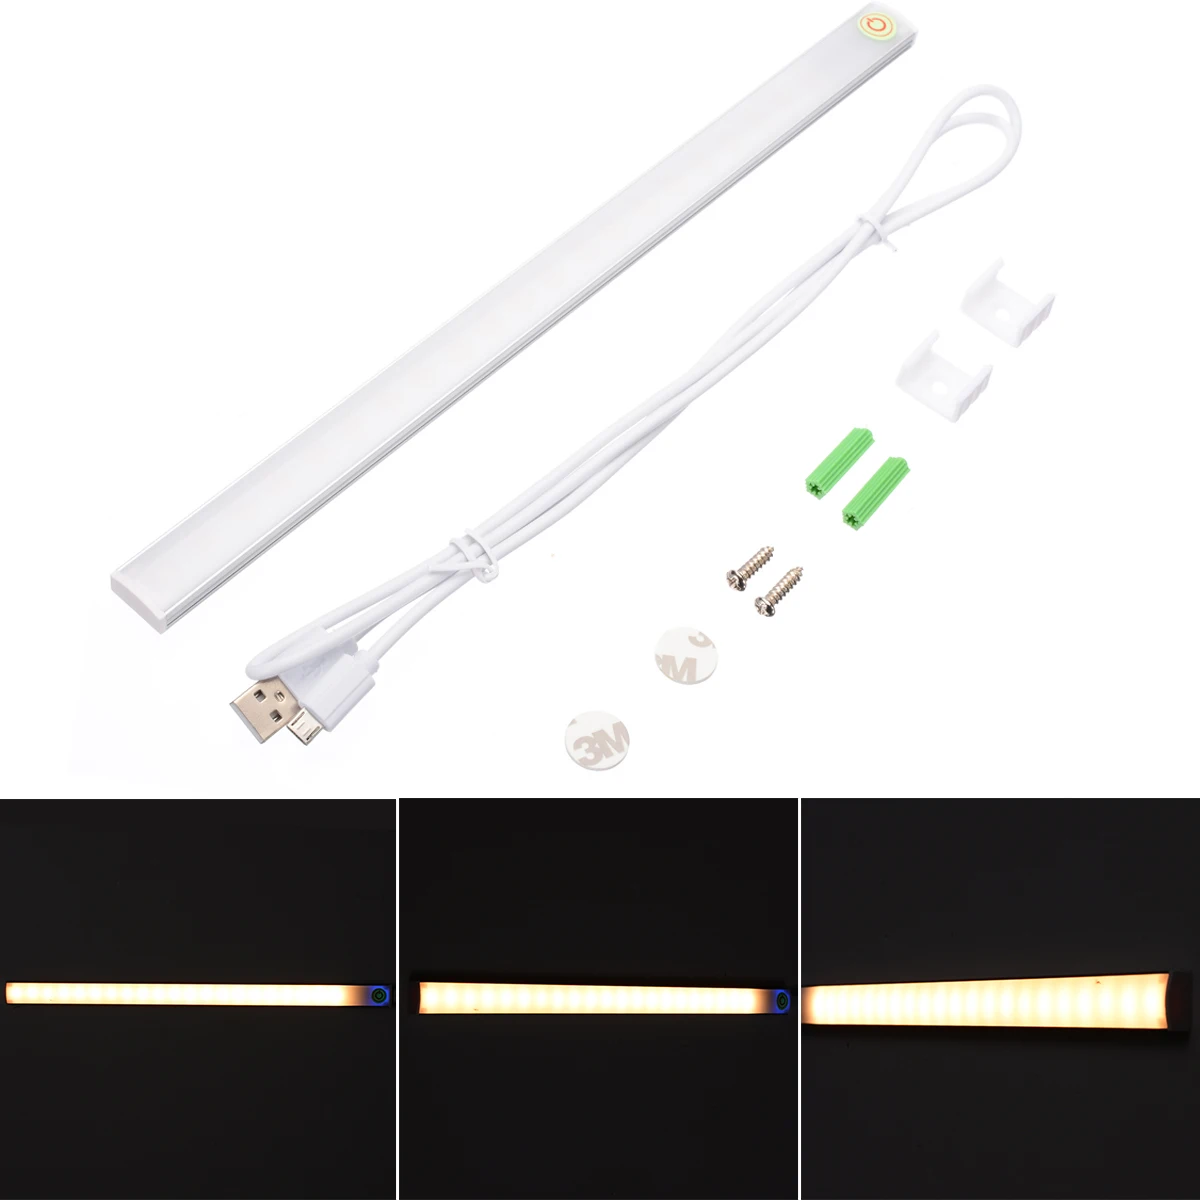 

30cm Ultra Slim Dimmable USB LED Touch Sensor Light Warm White Sensor Cabinet Light For Closet Wardrobe Desk